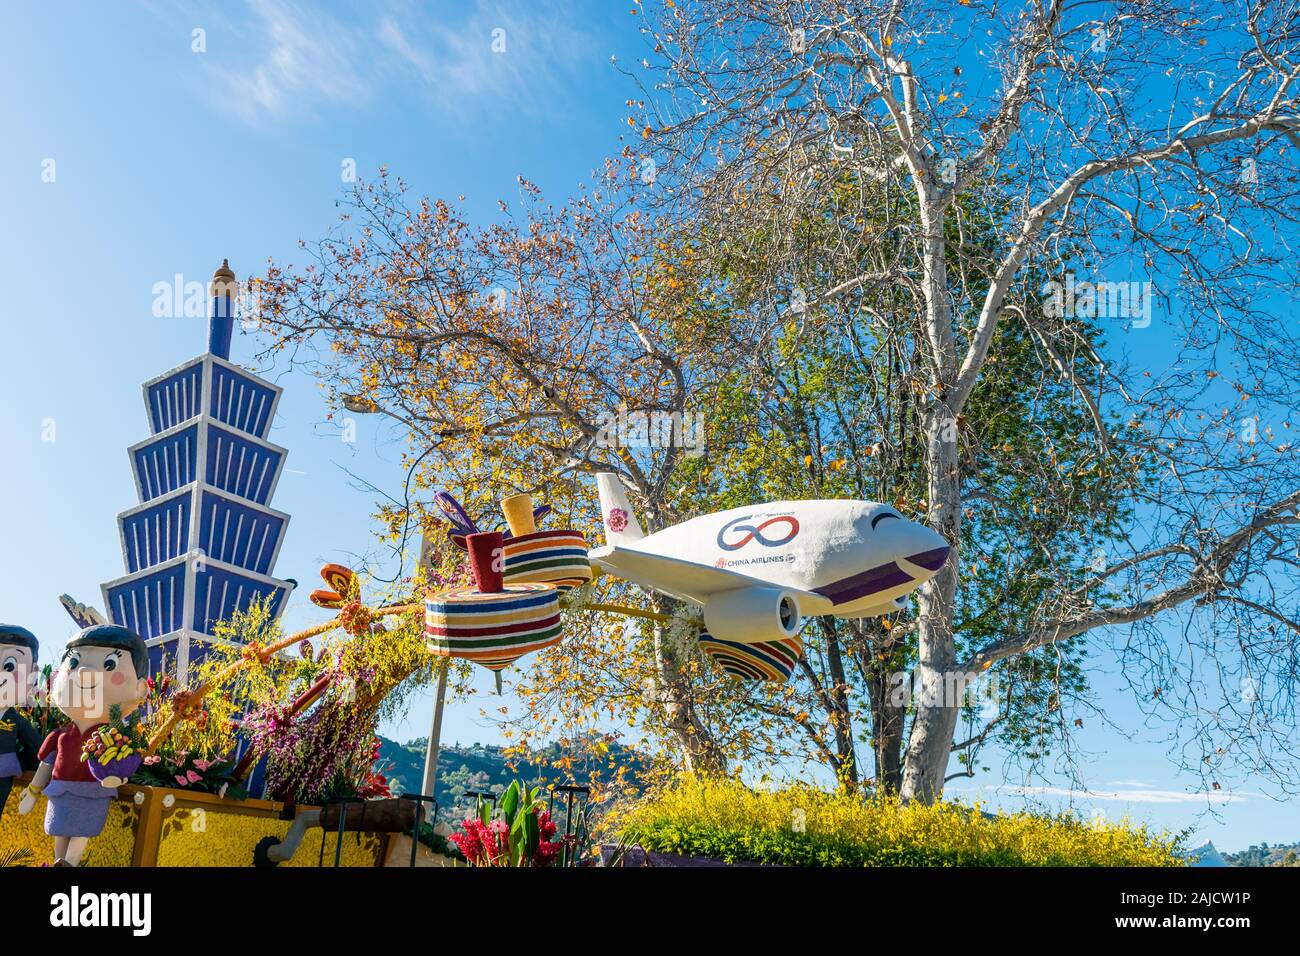 China Airlines float vince il premio internazionale al Torneo delle Rose Parade di Pasadena, Calif, nel 2020 Foto Stock